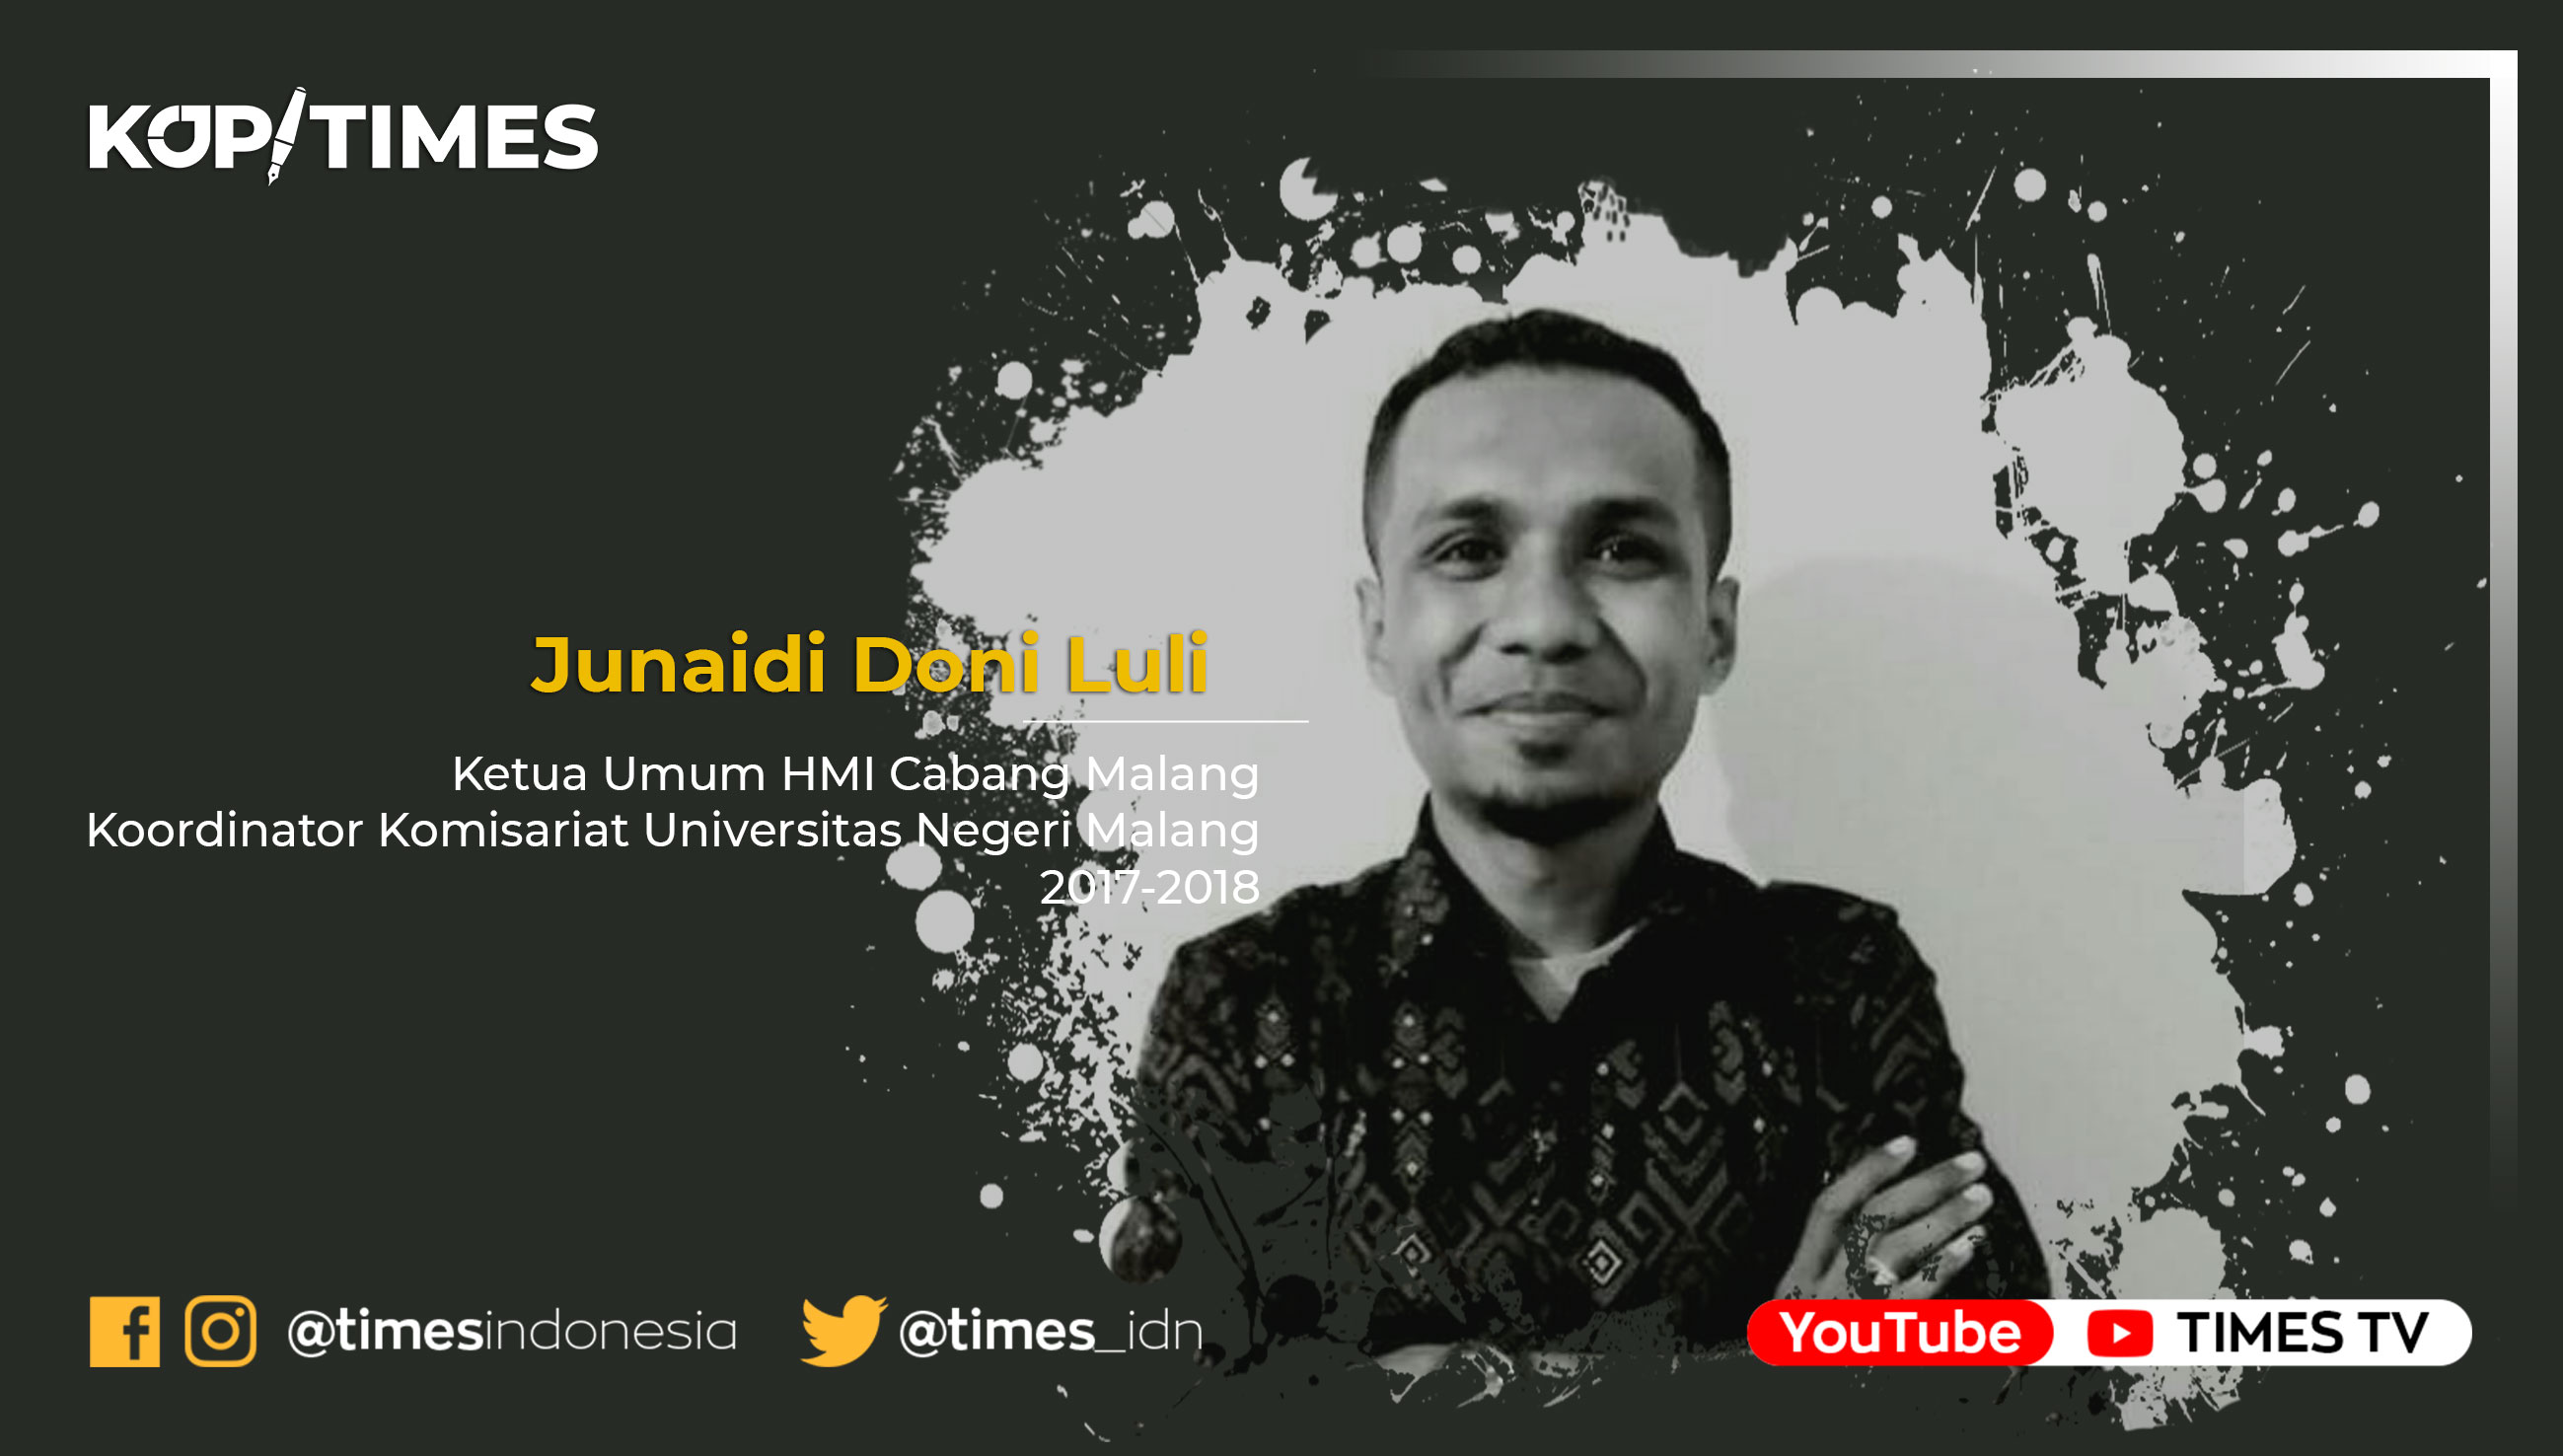 Junaidi Doni Luli, Ketua Umum HMI Cabang Malang Koordinator Komisariat Universitas Negeri Malang 2017-2018